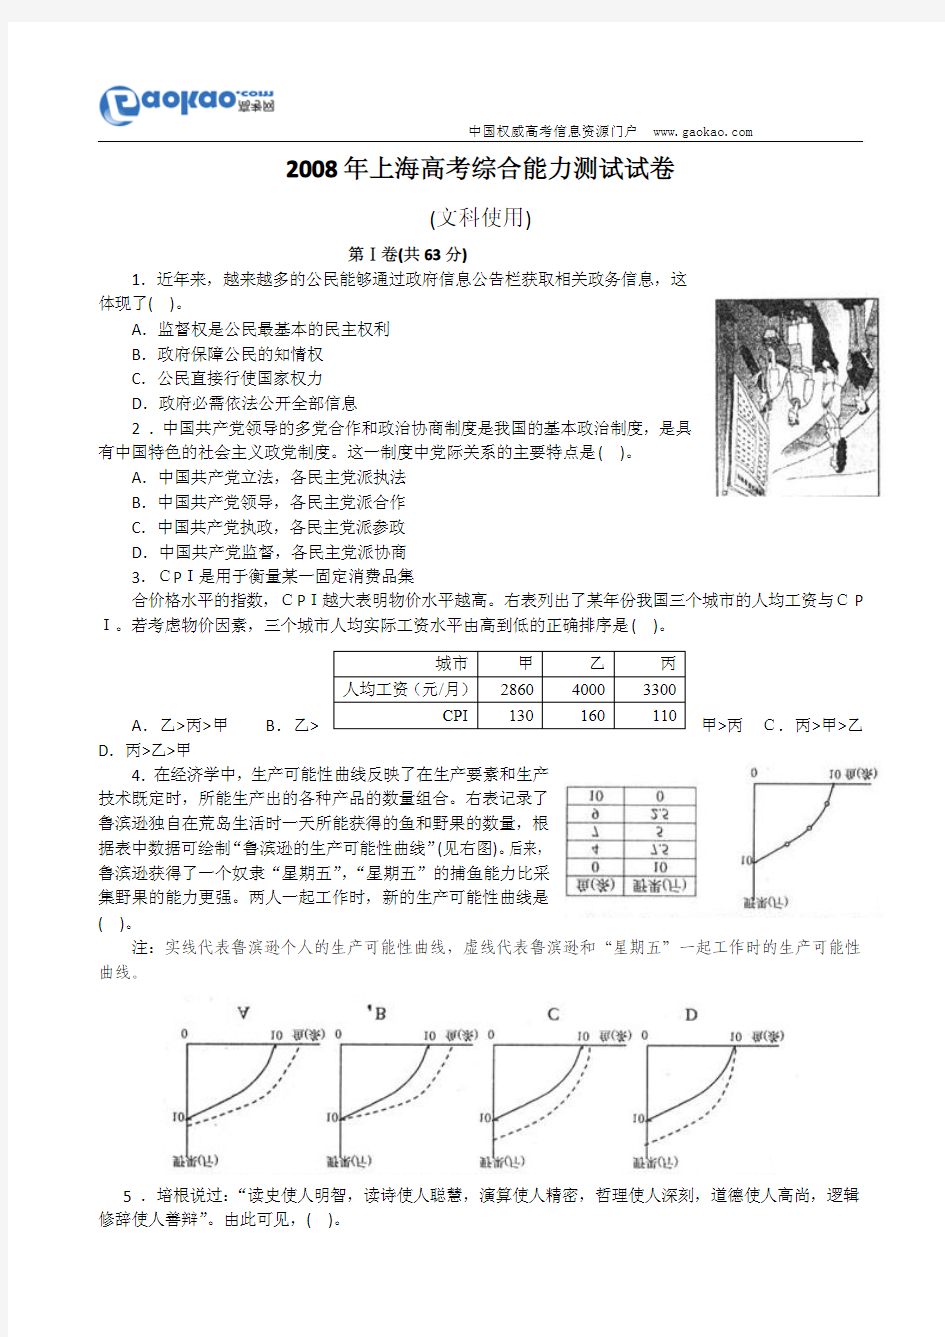 2008年高考文综试题及答案(上海卷)